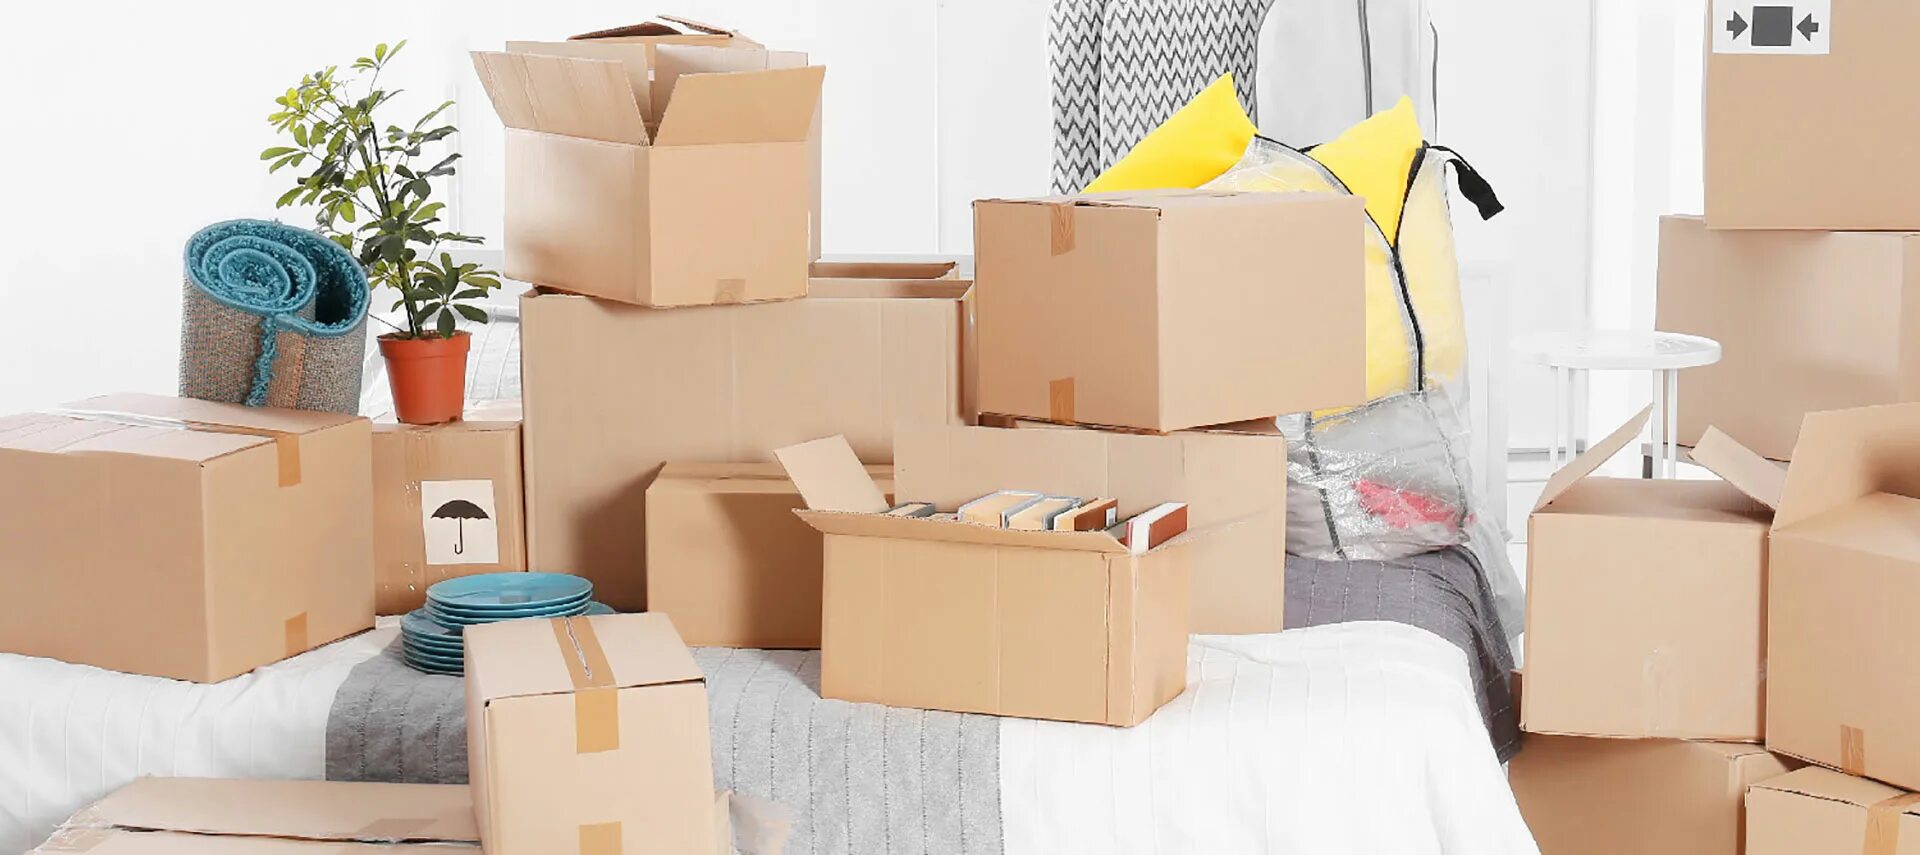 Переезд вещи. Коробки в квартире. Комната с коробками. Коробки с вещами.